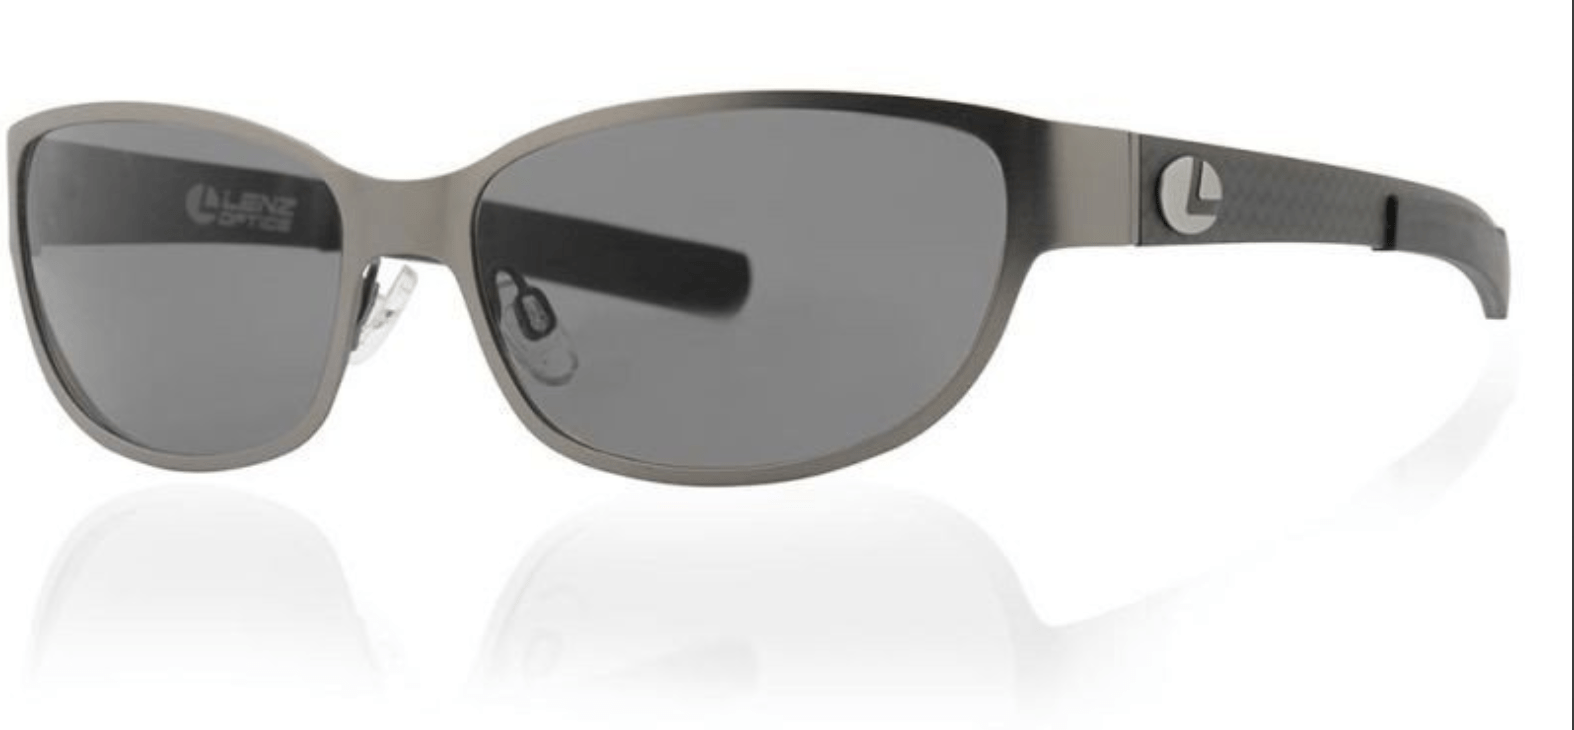 Lenz Optics Sunglasses Grey w/Grey Lens (49193) Lenz Optics Cascapedia Titan/Carbon Sunglasses